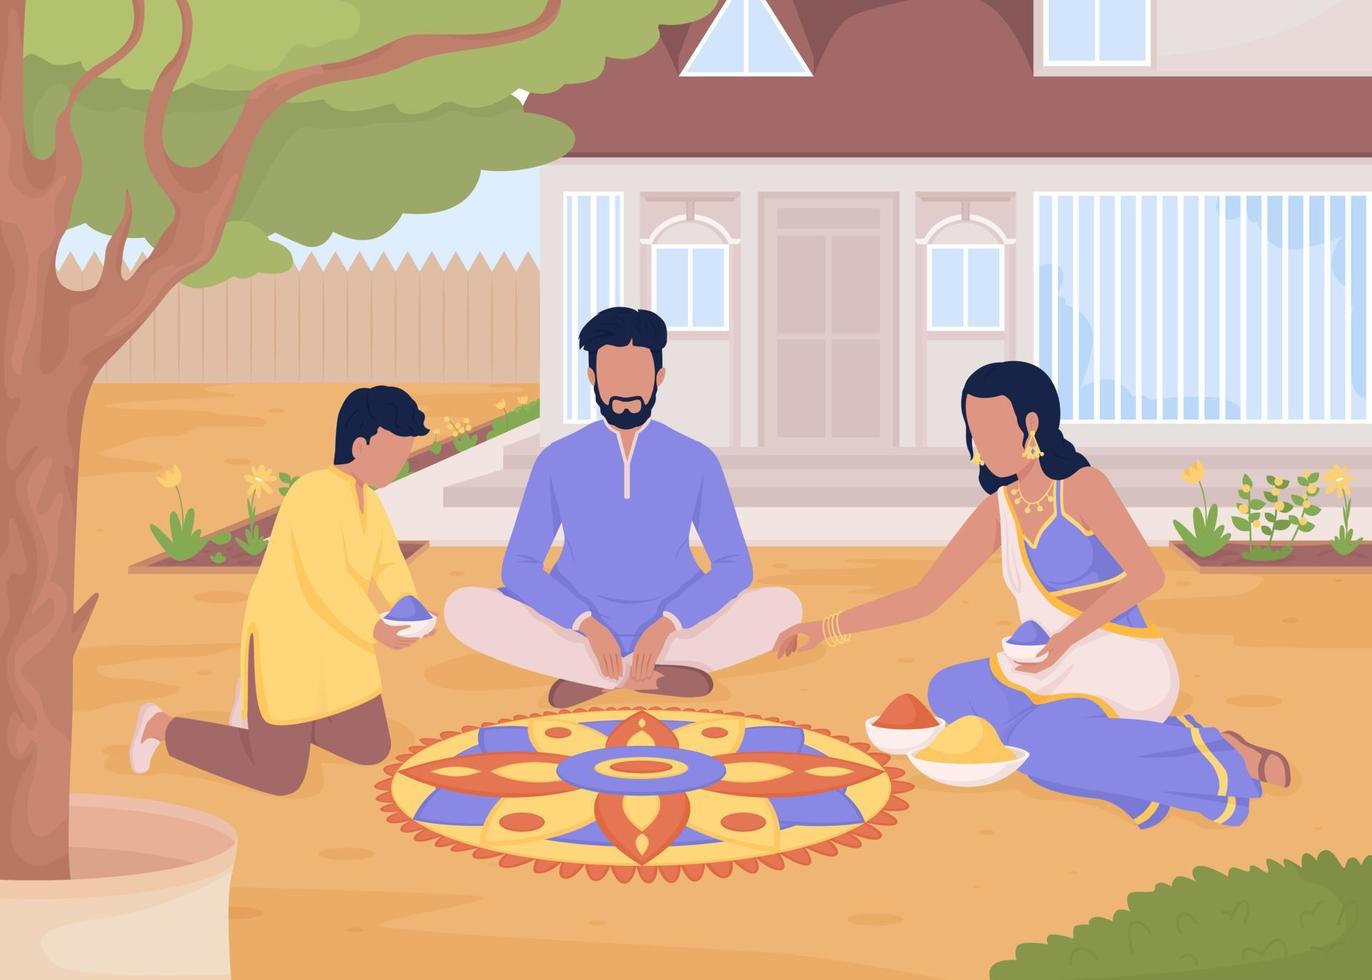 blumenrangoli mit flacher farbvektorillustration der familie erstellen. traditioneller indischer Brauch. Vorbereitung auf das Diwali-Fest. vollständig bearbeitbare einfache 2d-zeichentrickfiguren mit haus im hintergrund vektor